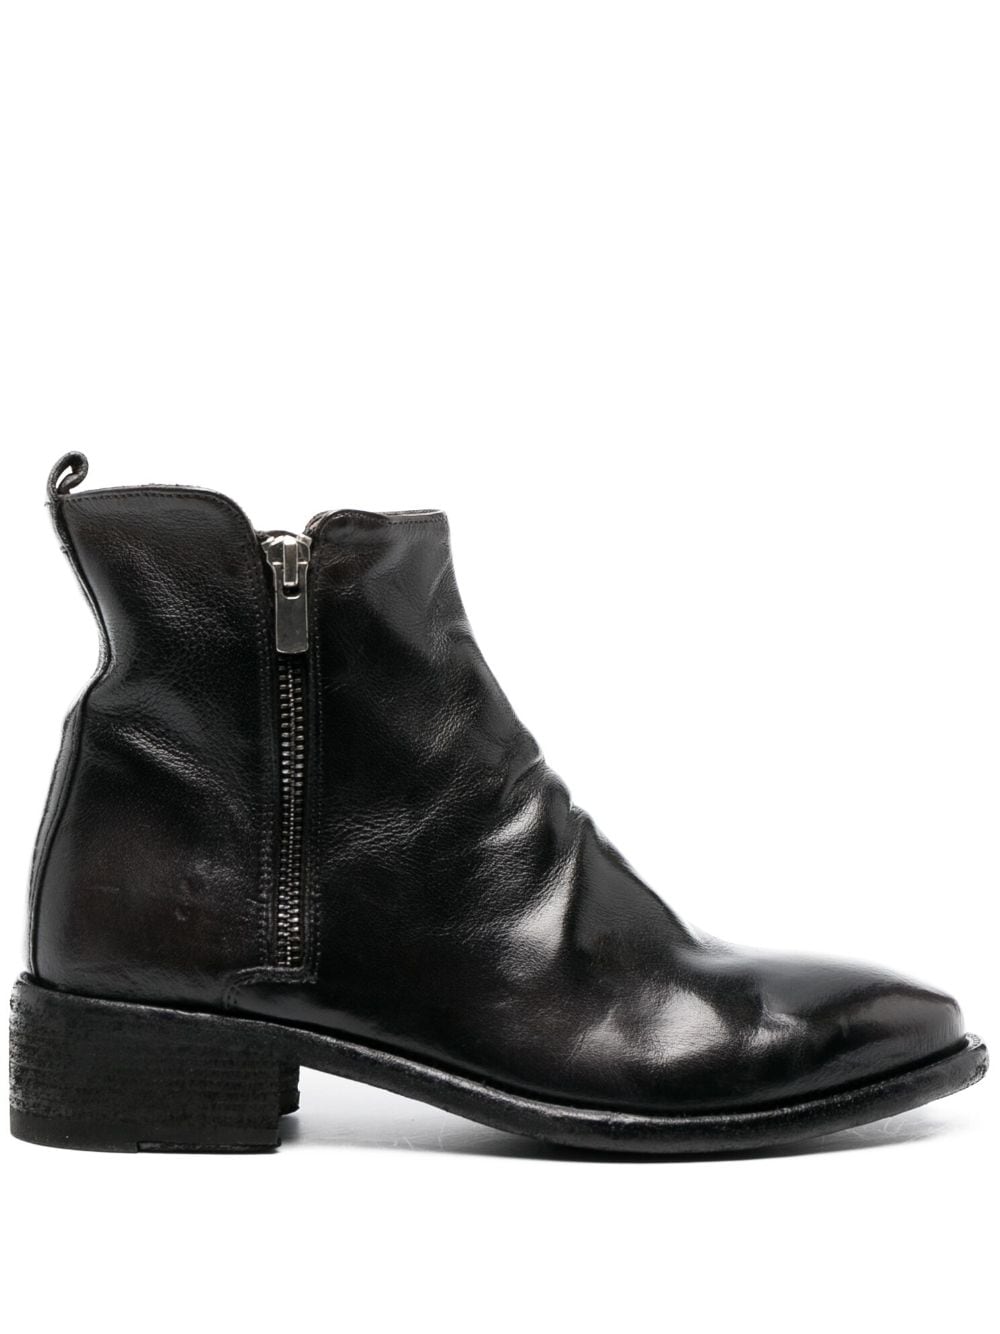 Officine Creative Seline 40mm leather boots - Black von Officine Creative